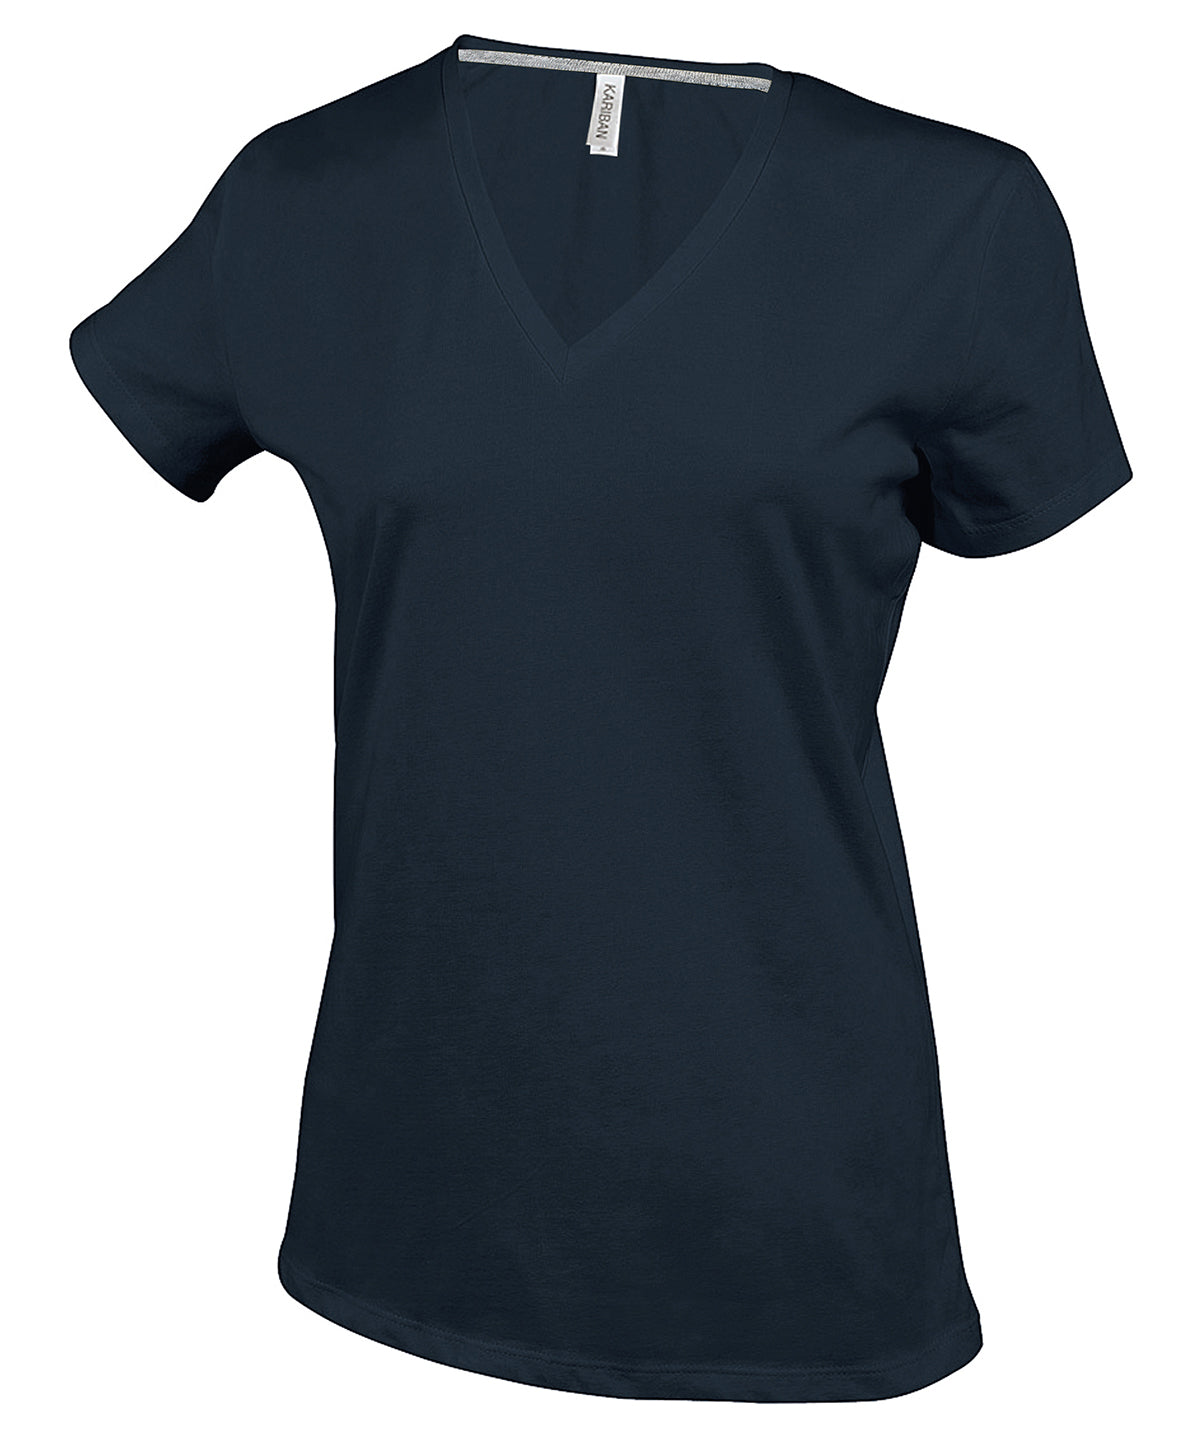 Stuttermabolir - Ladies' Short-sleeved V-neck T-shirt